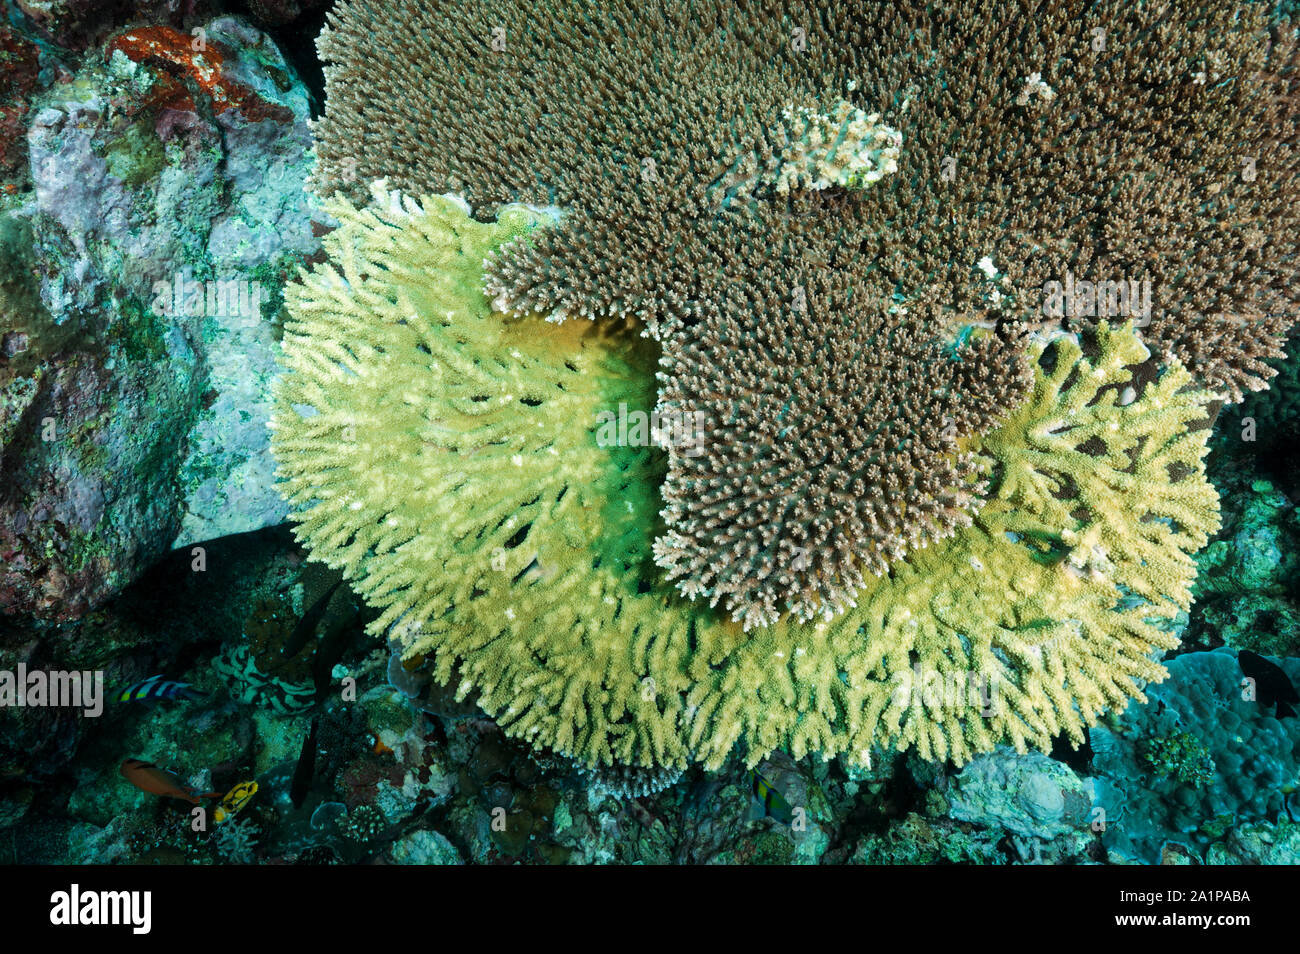 La concorrenza tra Acropora coralli duri per la luce del sole, Sulawesi Indonesia. Foto Stock